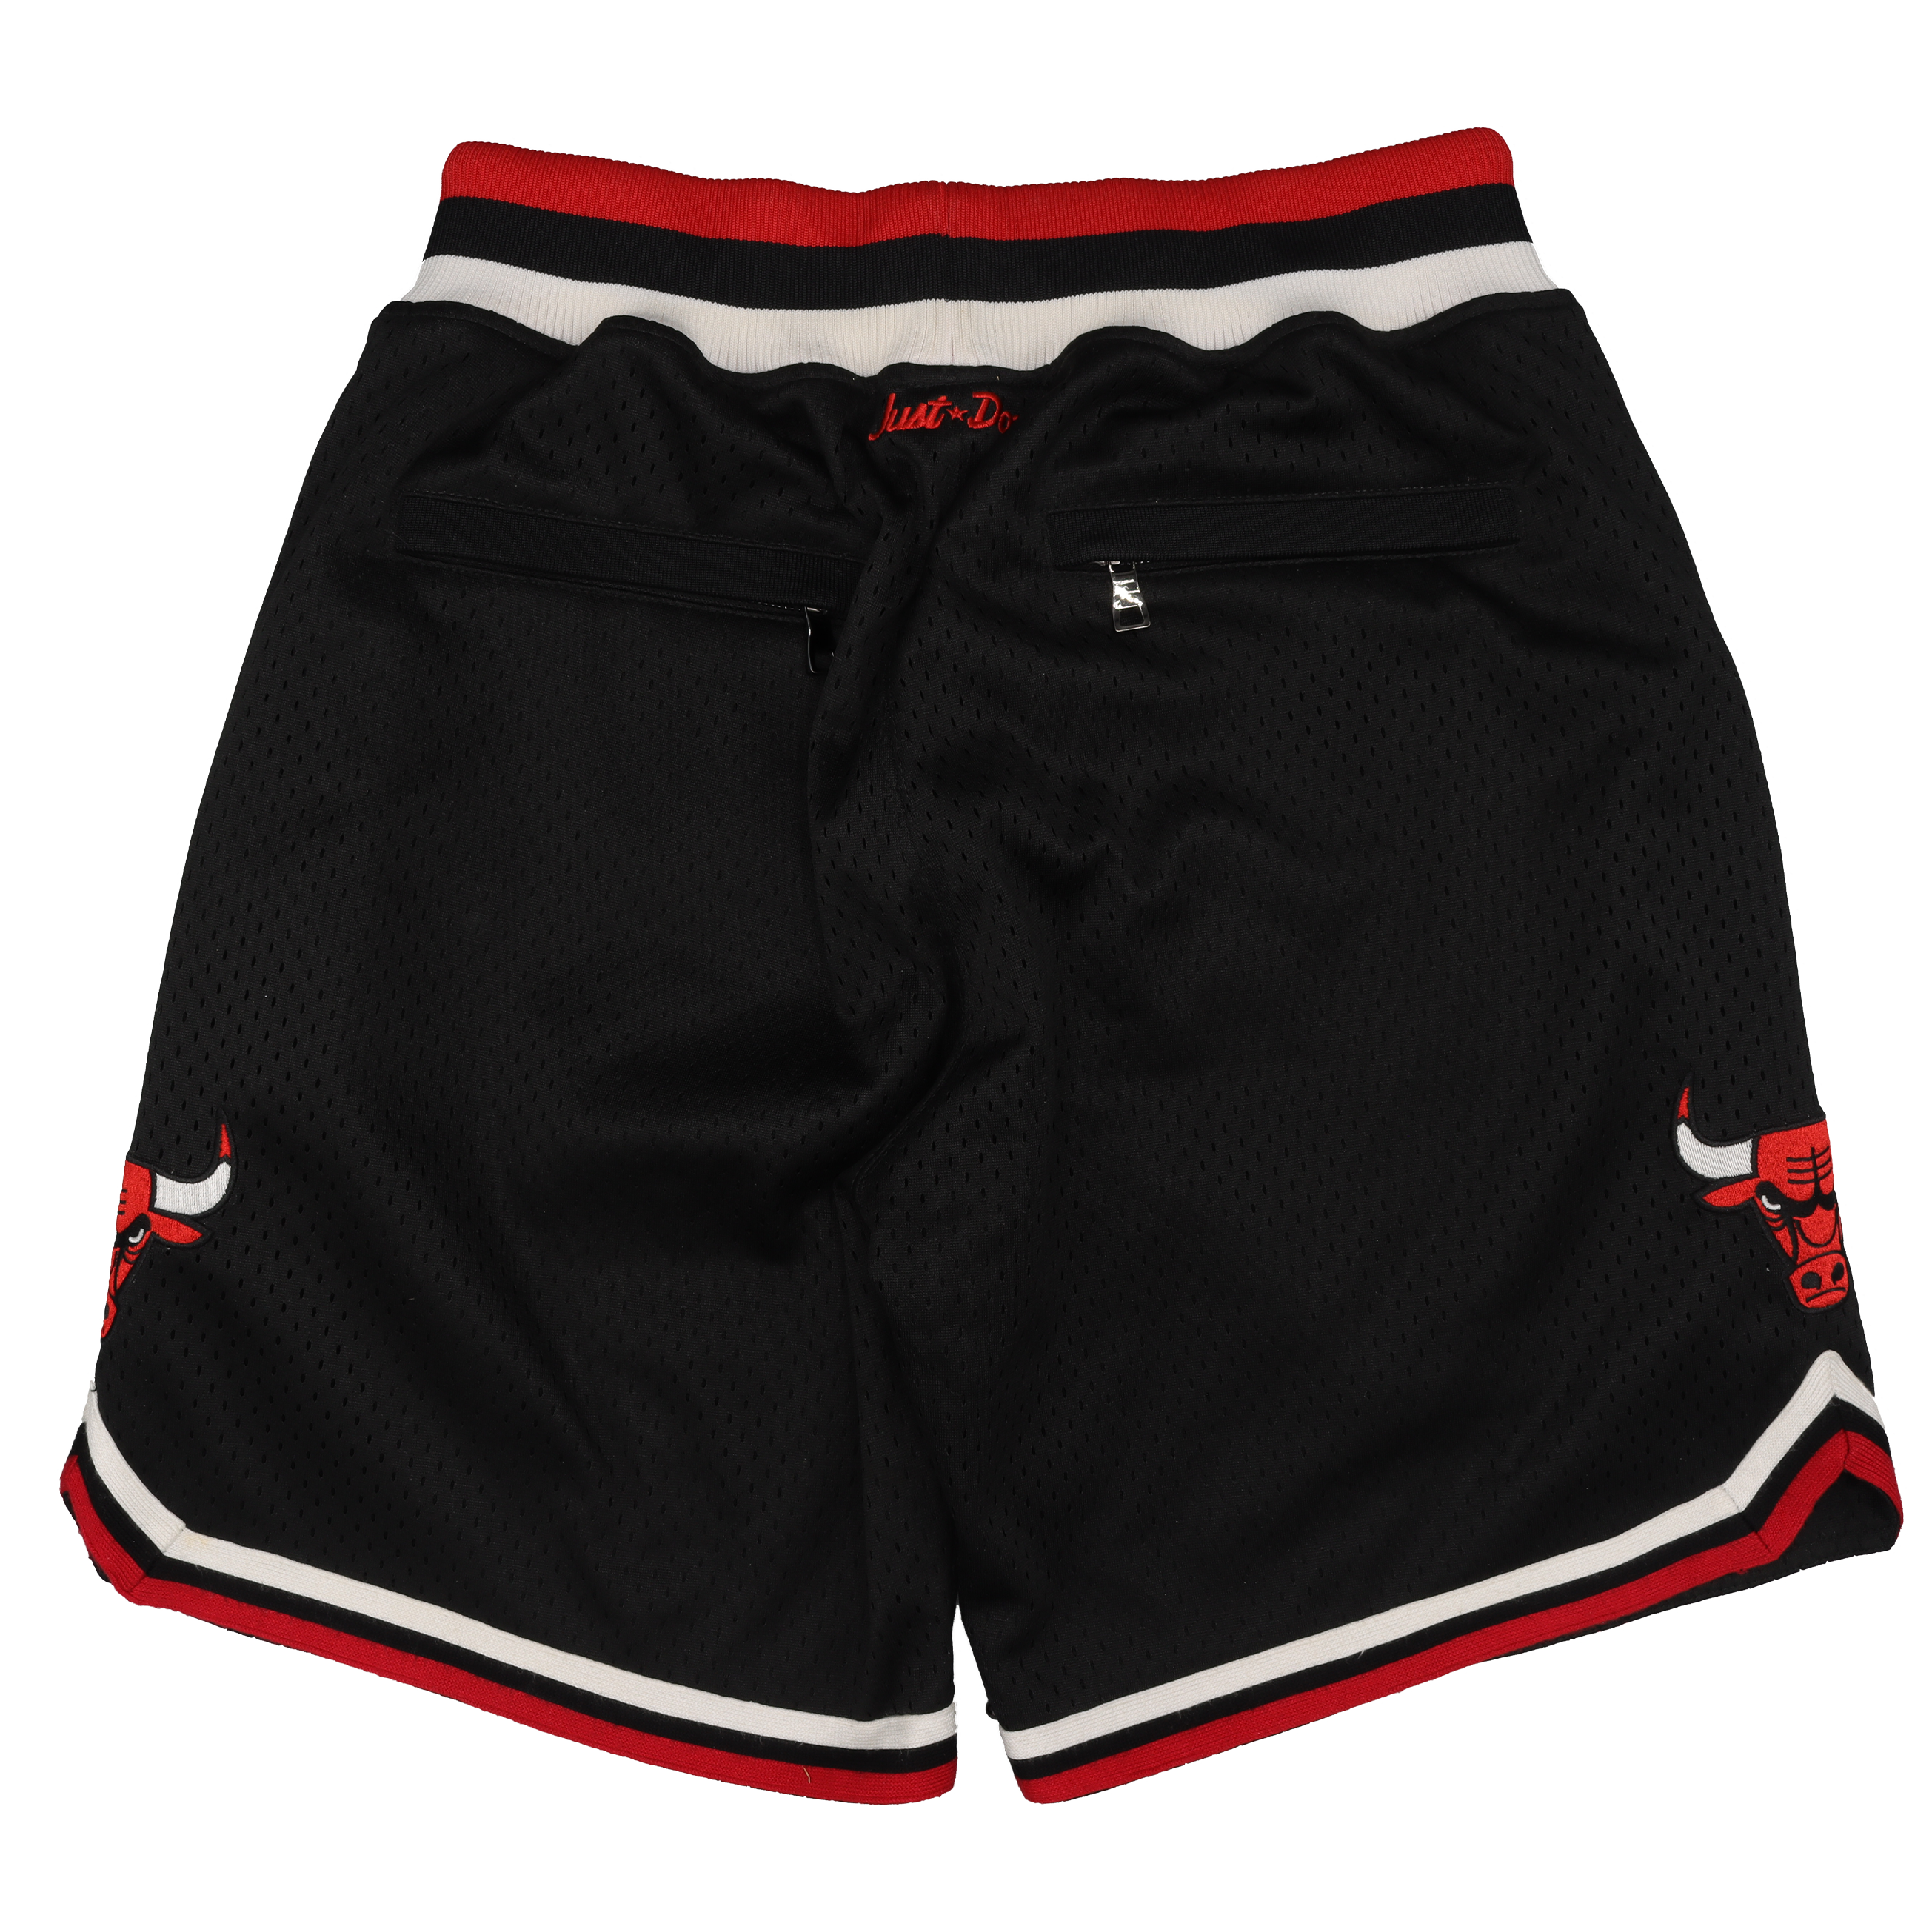 Chicago Bulls Shorts